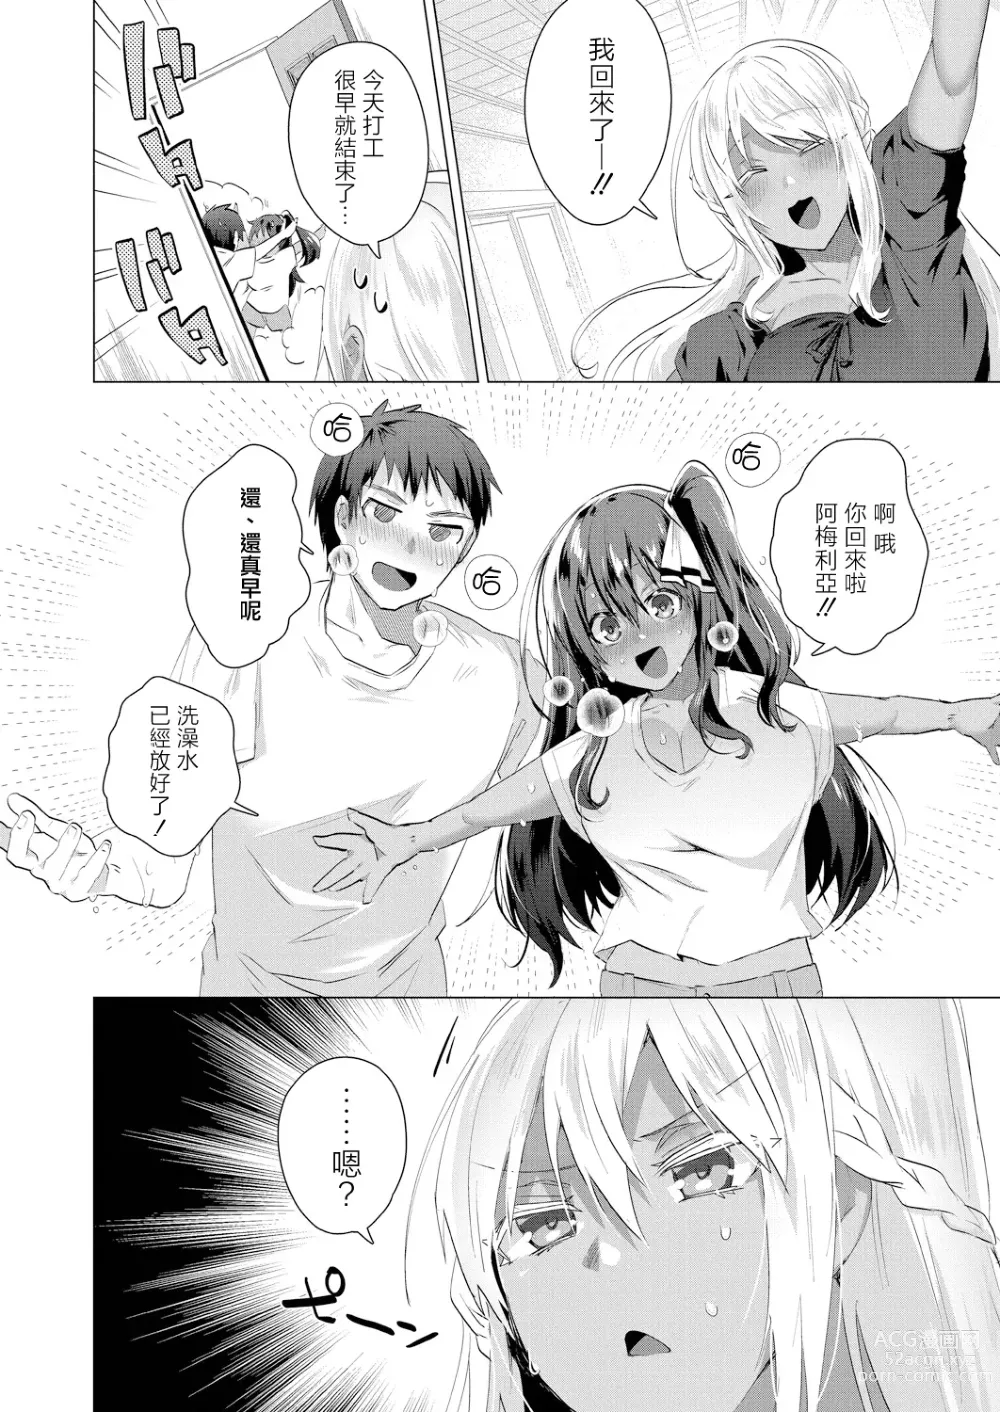 Page 22 of manga Komugiiro no Natsutachi Ch. 2